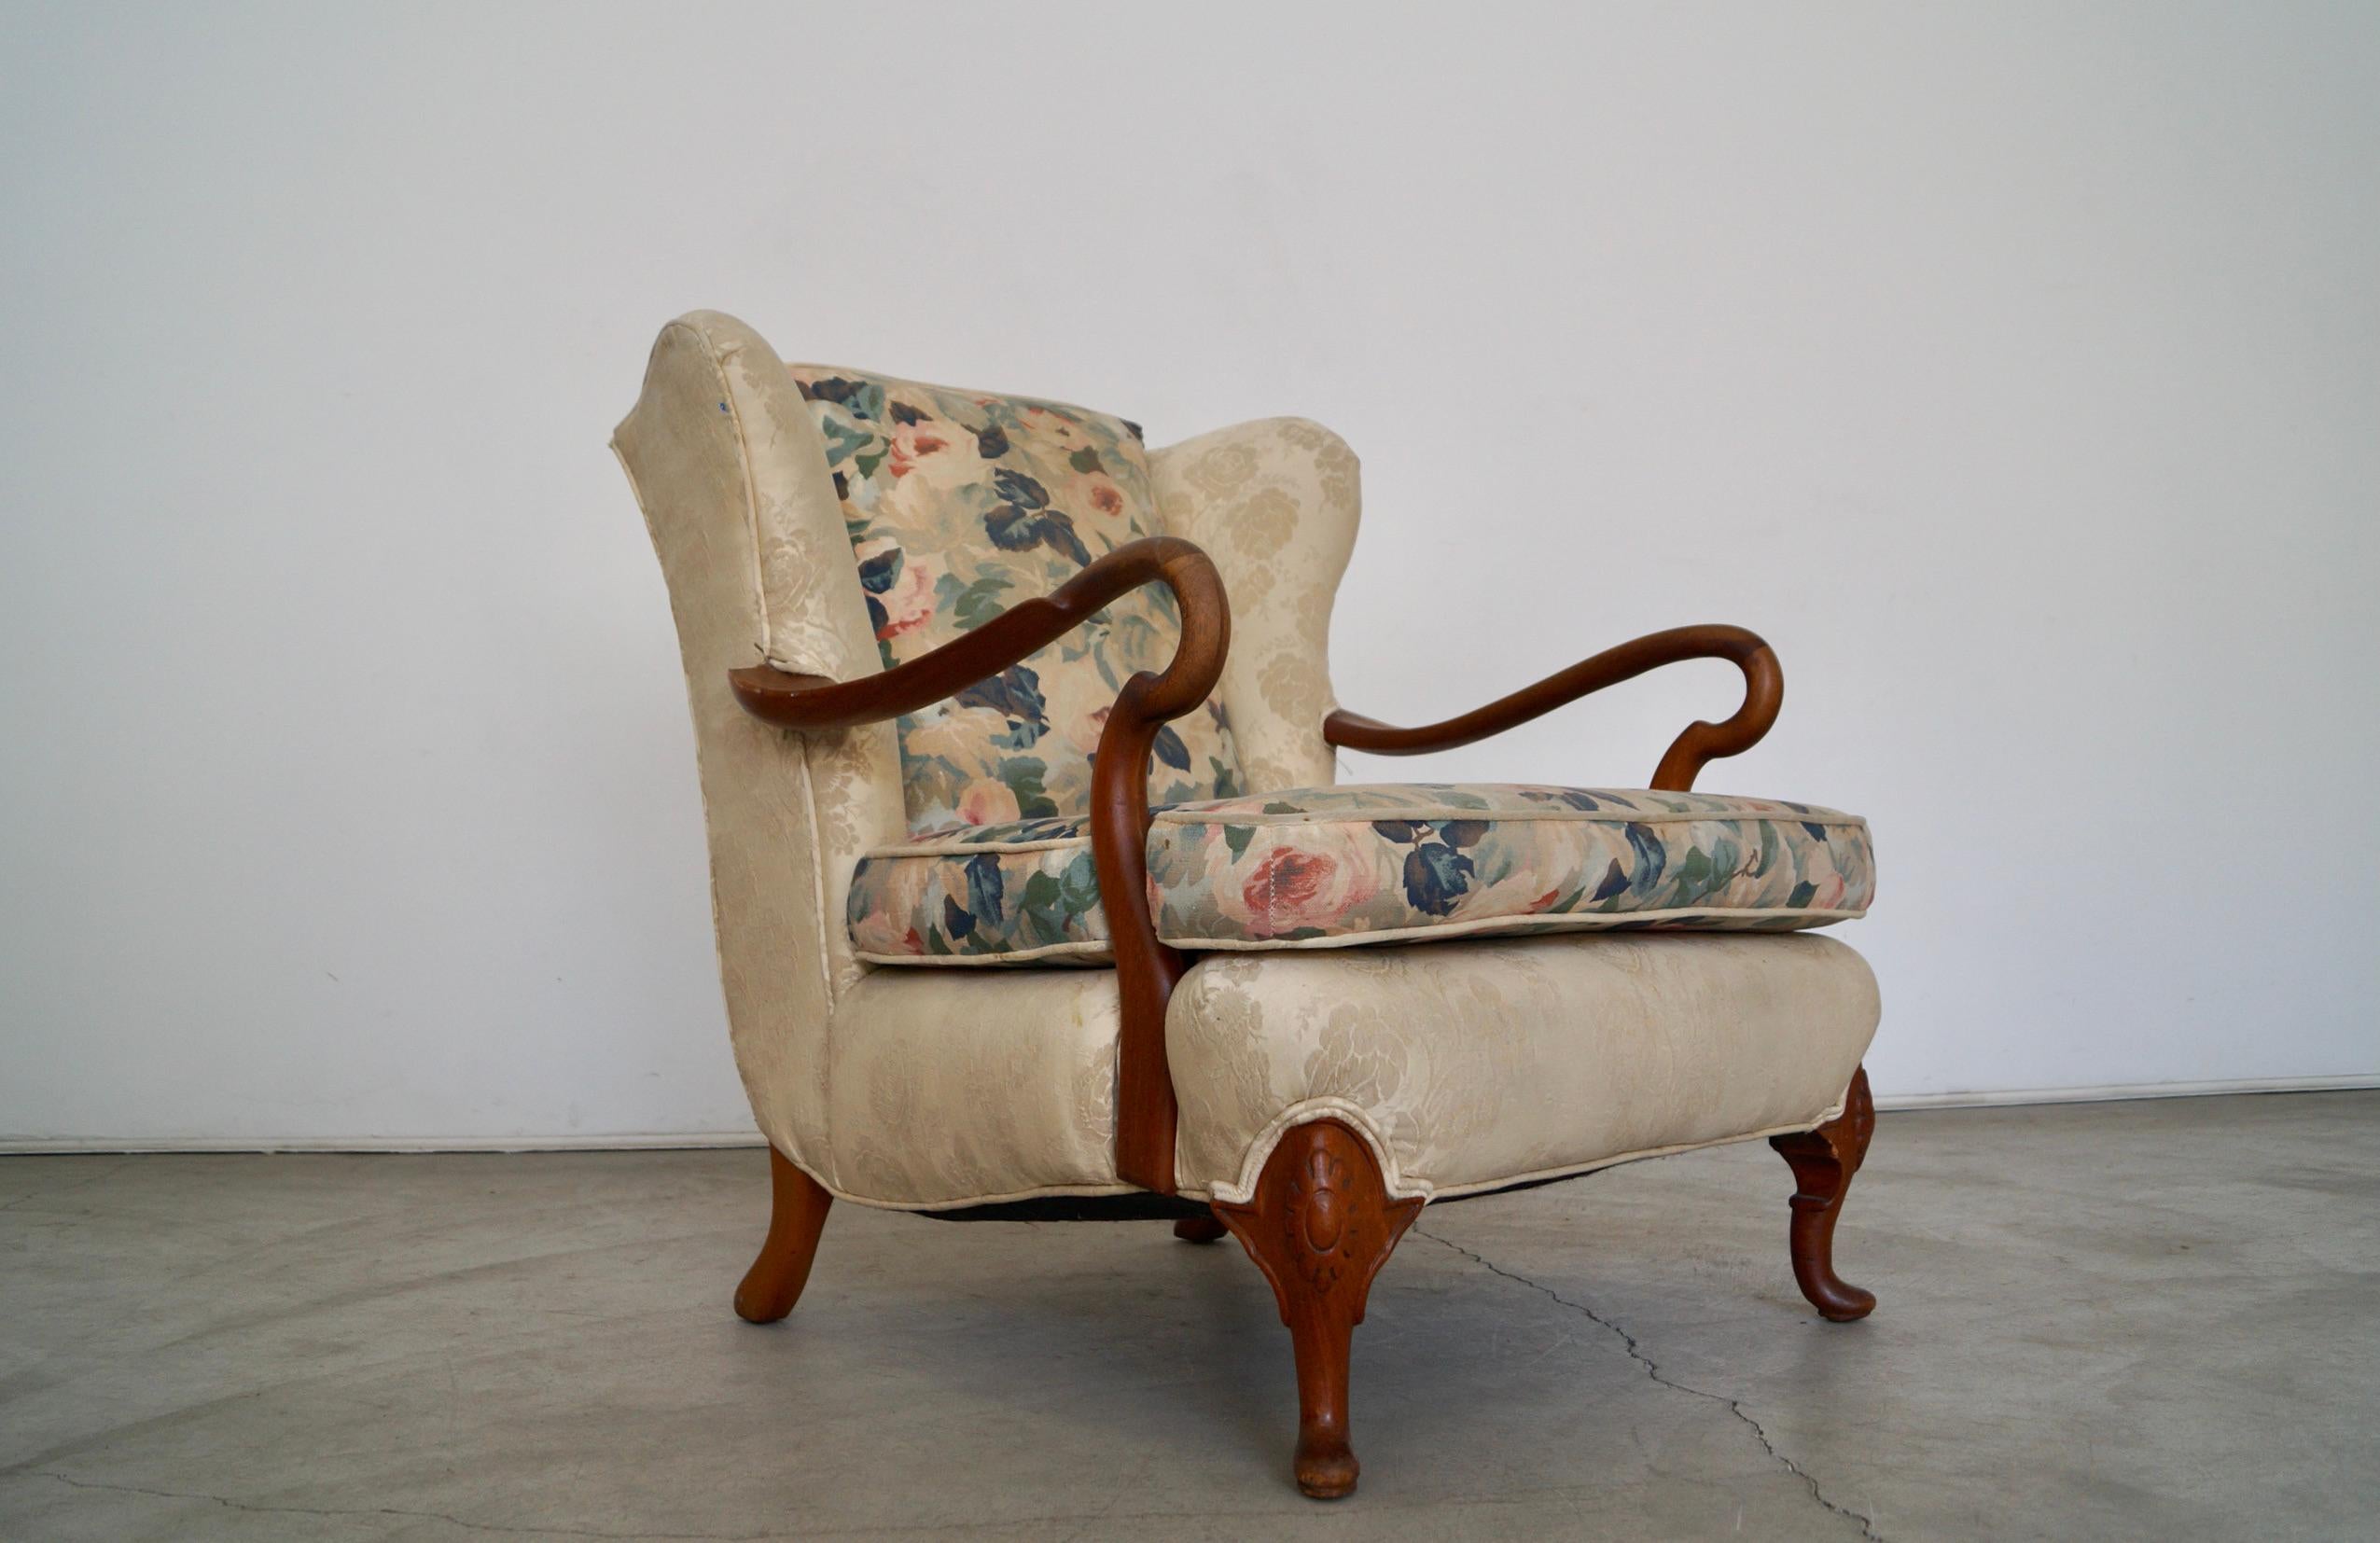 Vintage wingback lounge chair for sale. Sie stammt aus den 1930er Jahren und hat einen erstaunlichen Rahmen und ein tolles Design. Er ist mit Seide gepolstert und hat eine Rückenlehne und ein Kissen aus geblümtem Leinen. Es ist ein solider und gut